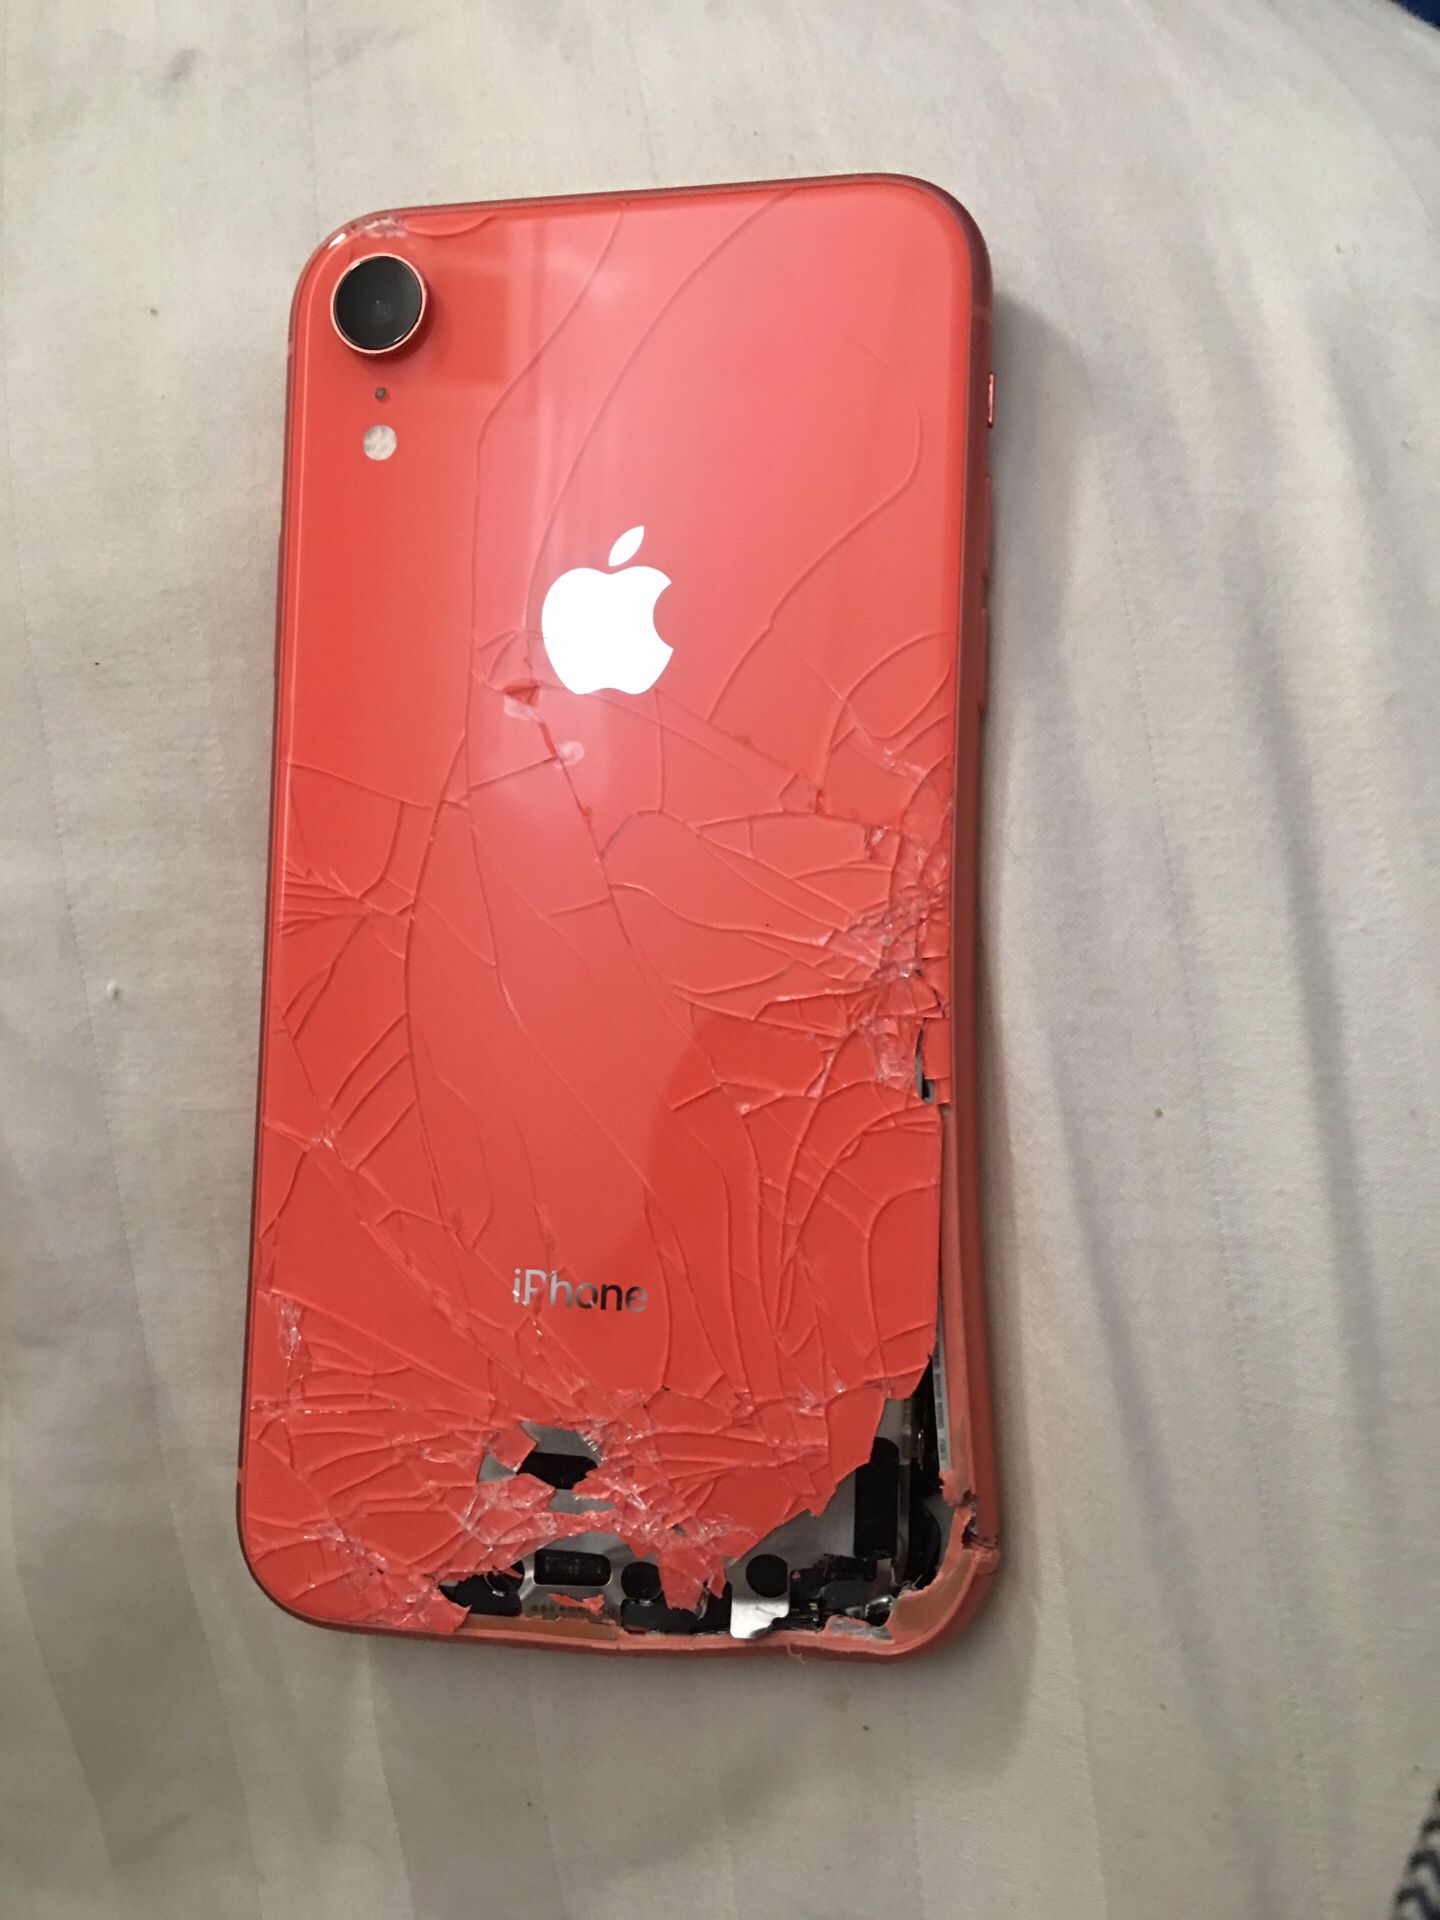 Broken iPhone Xr